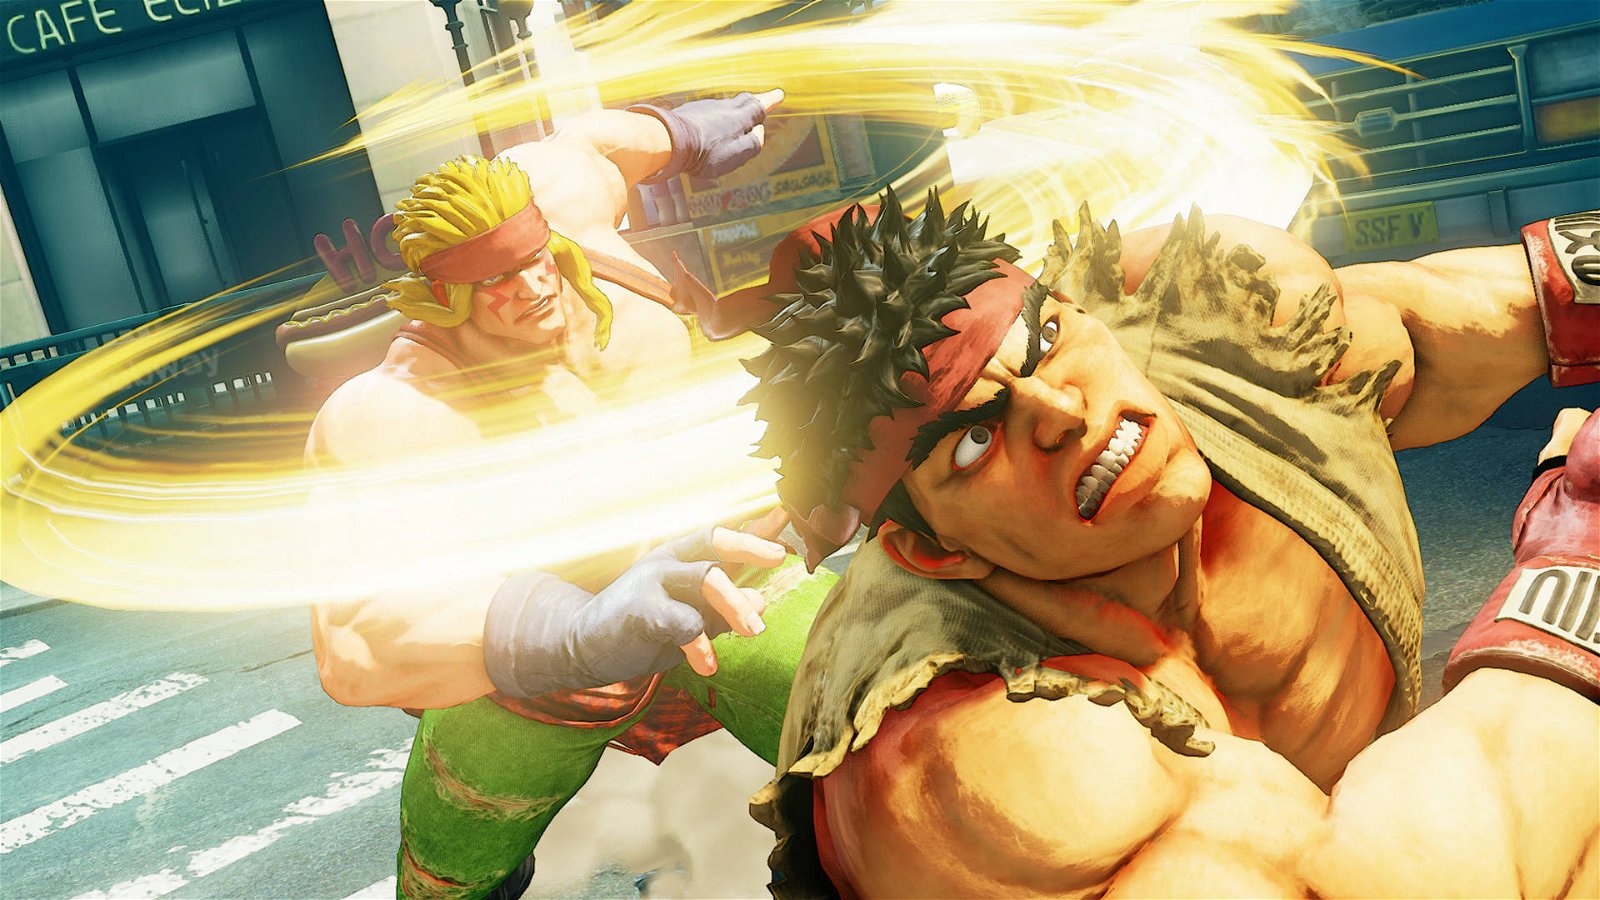 Immagine di Street Fighter: Ryu è più veloce di Bolt secondo la matematica